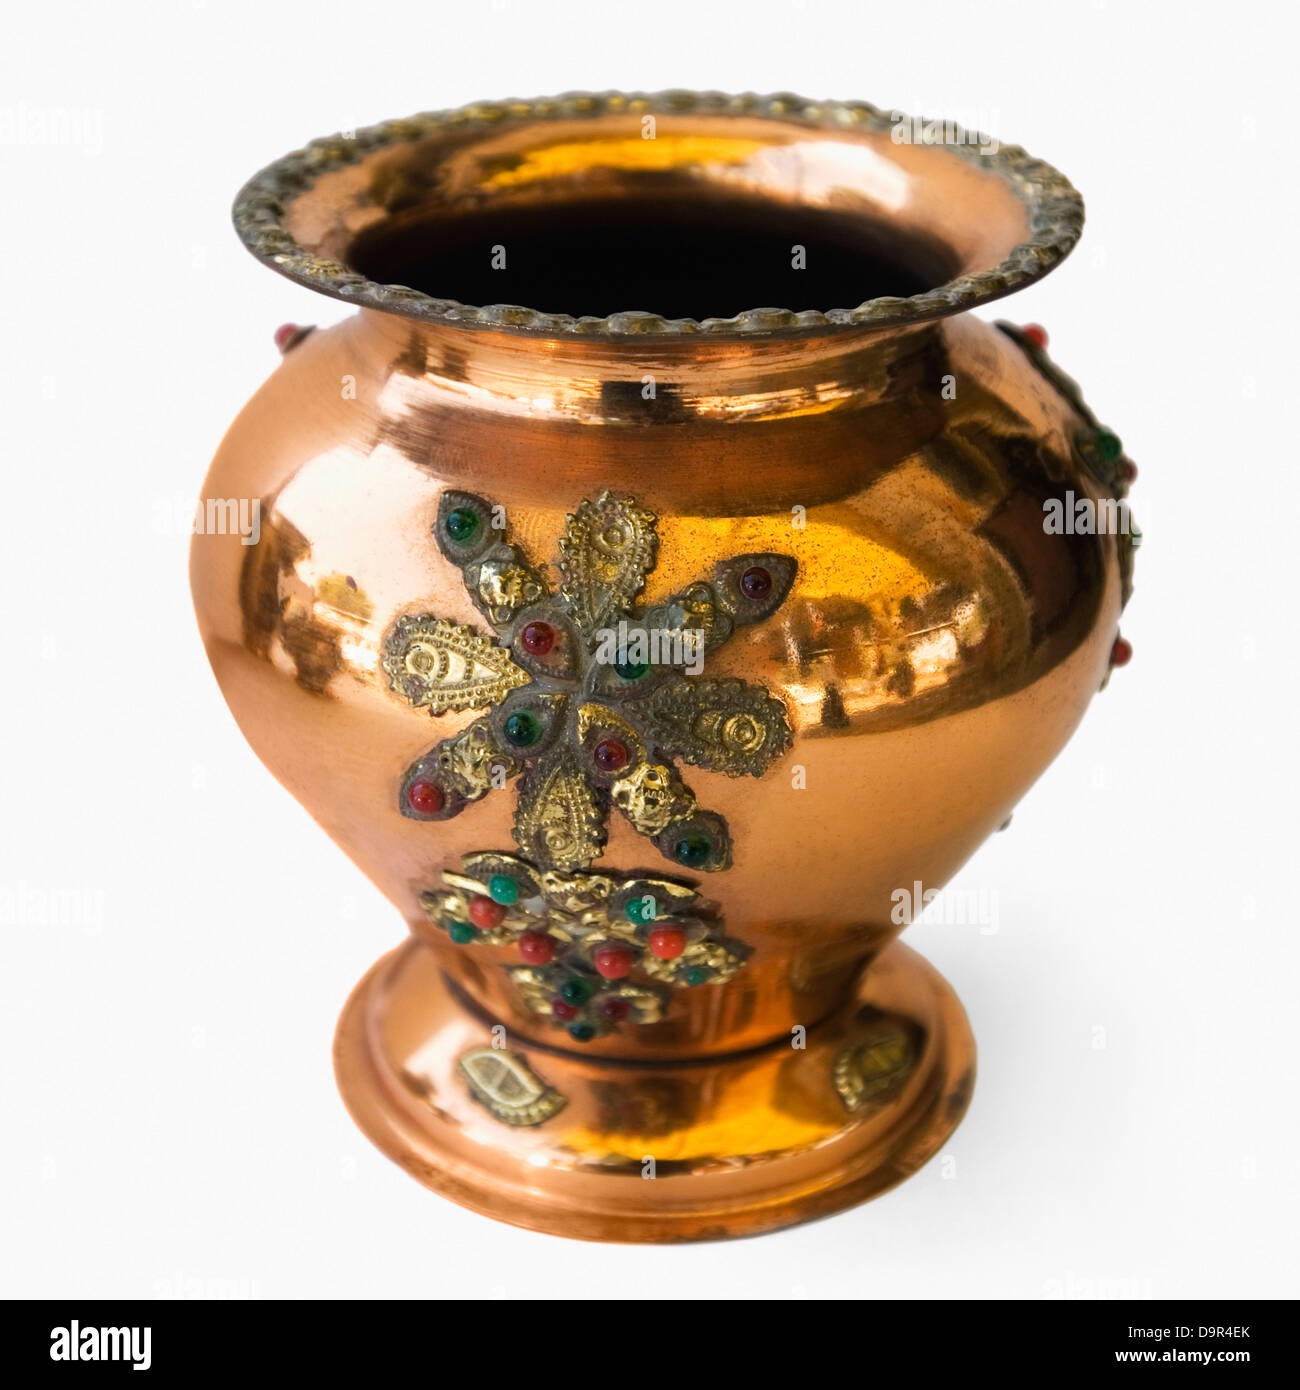 Close-up of an antique decorative metal pot Stock Photo